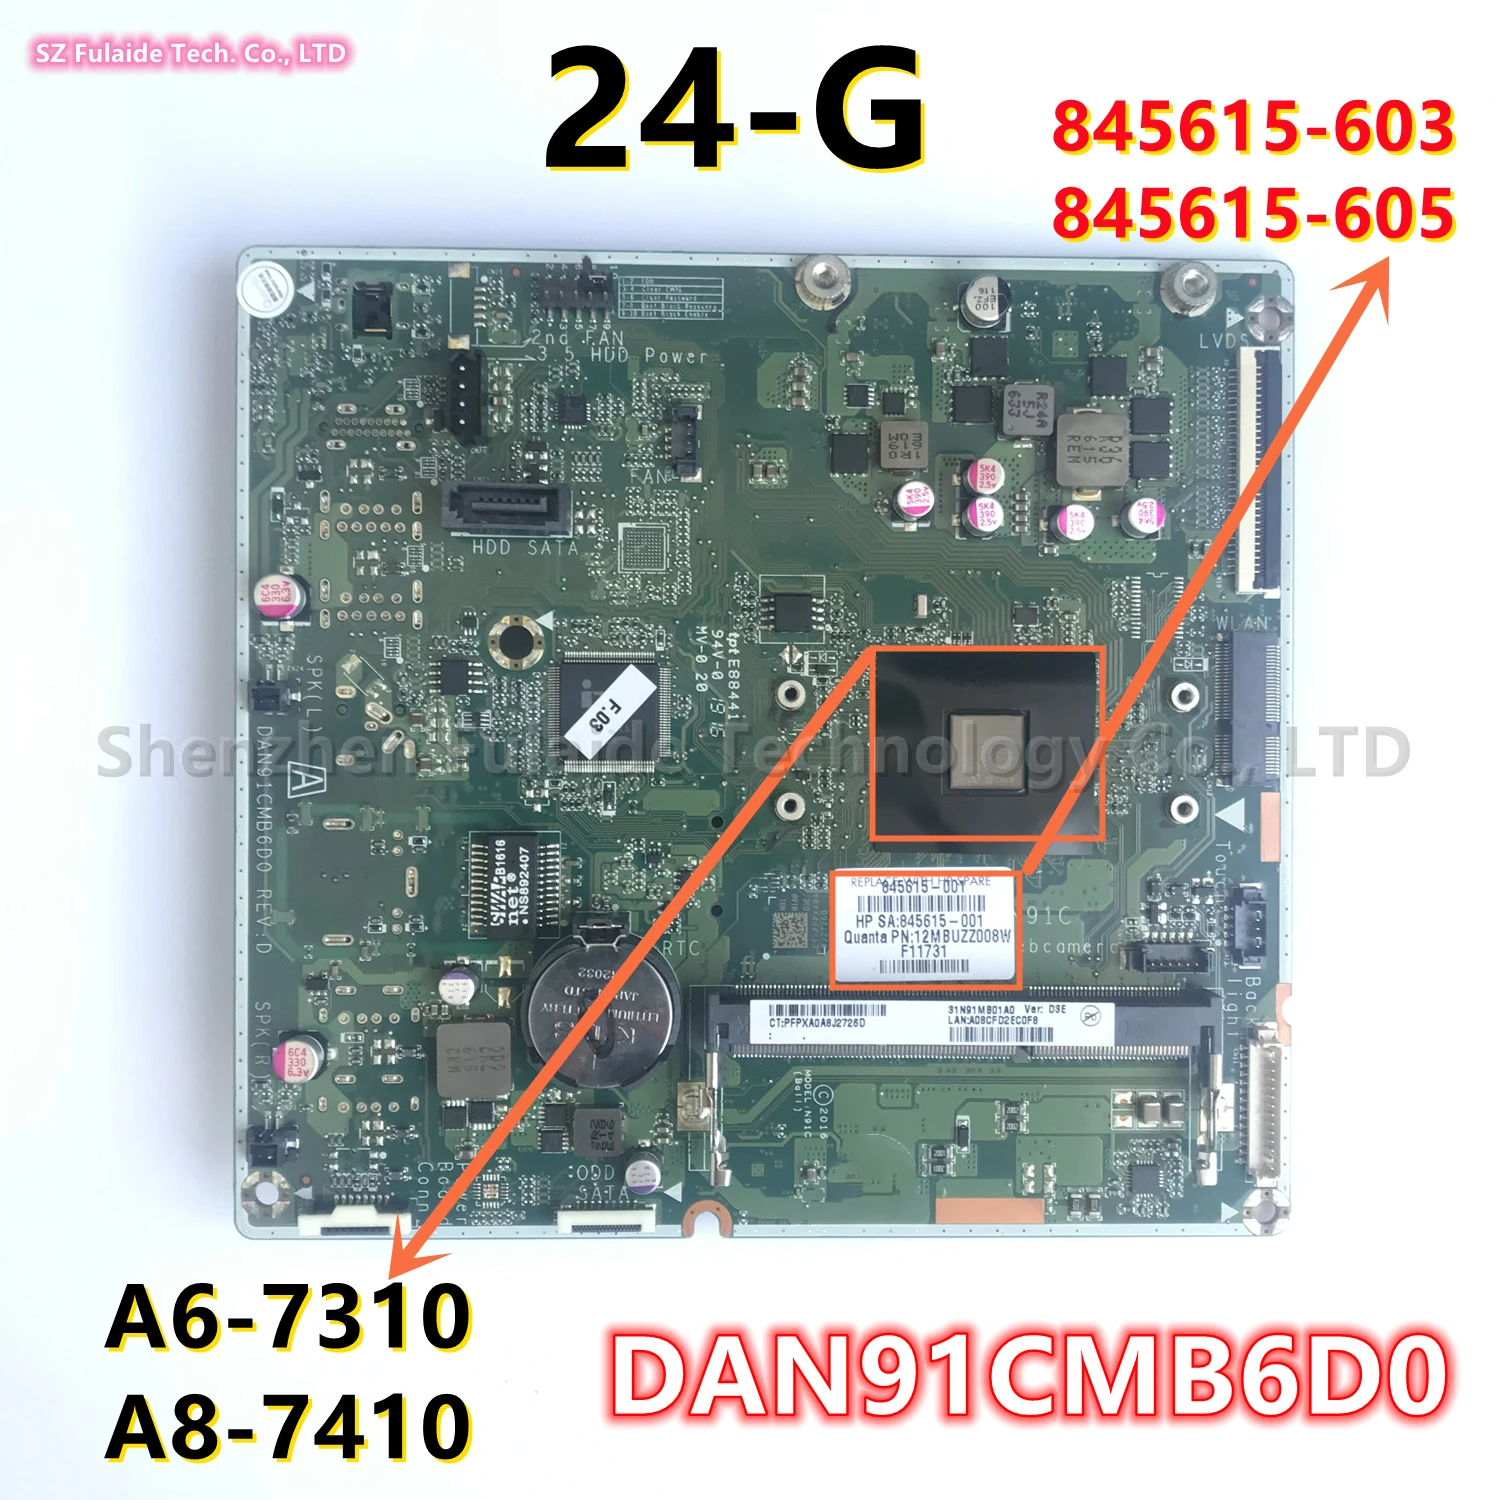 МОДЕЛЬ: N91C DAN91CMB6D0 Для материнской платы HP 24-G AIO с процессором A6-7310 A8-7410 DDR3 845615-603 845615-605 845615-005 100% протестировано